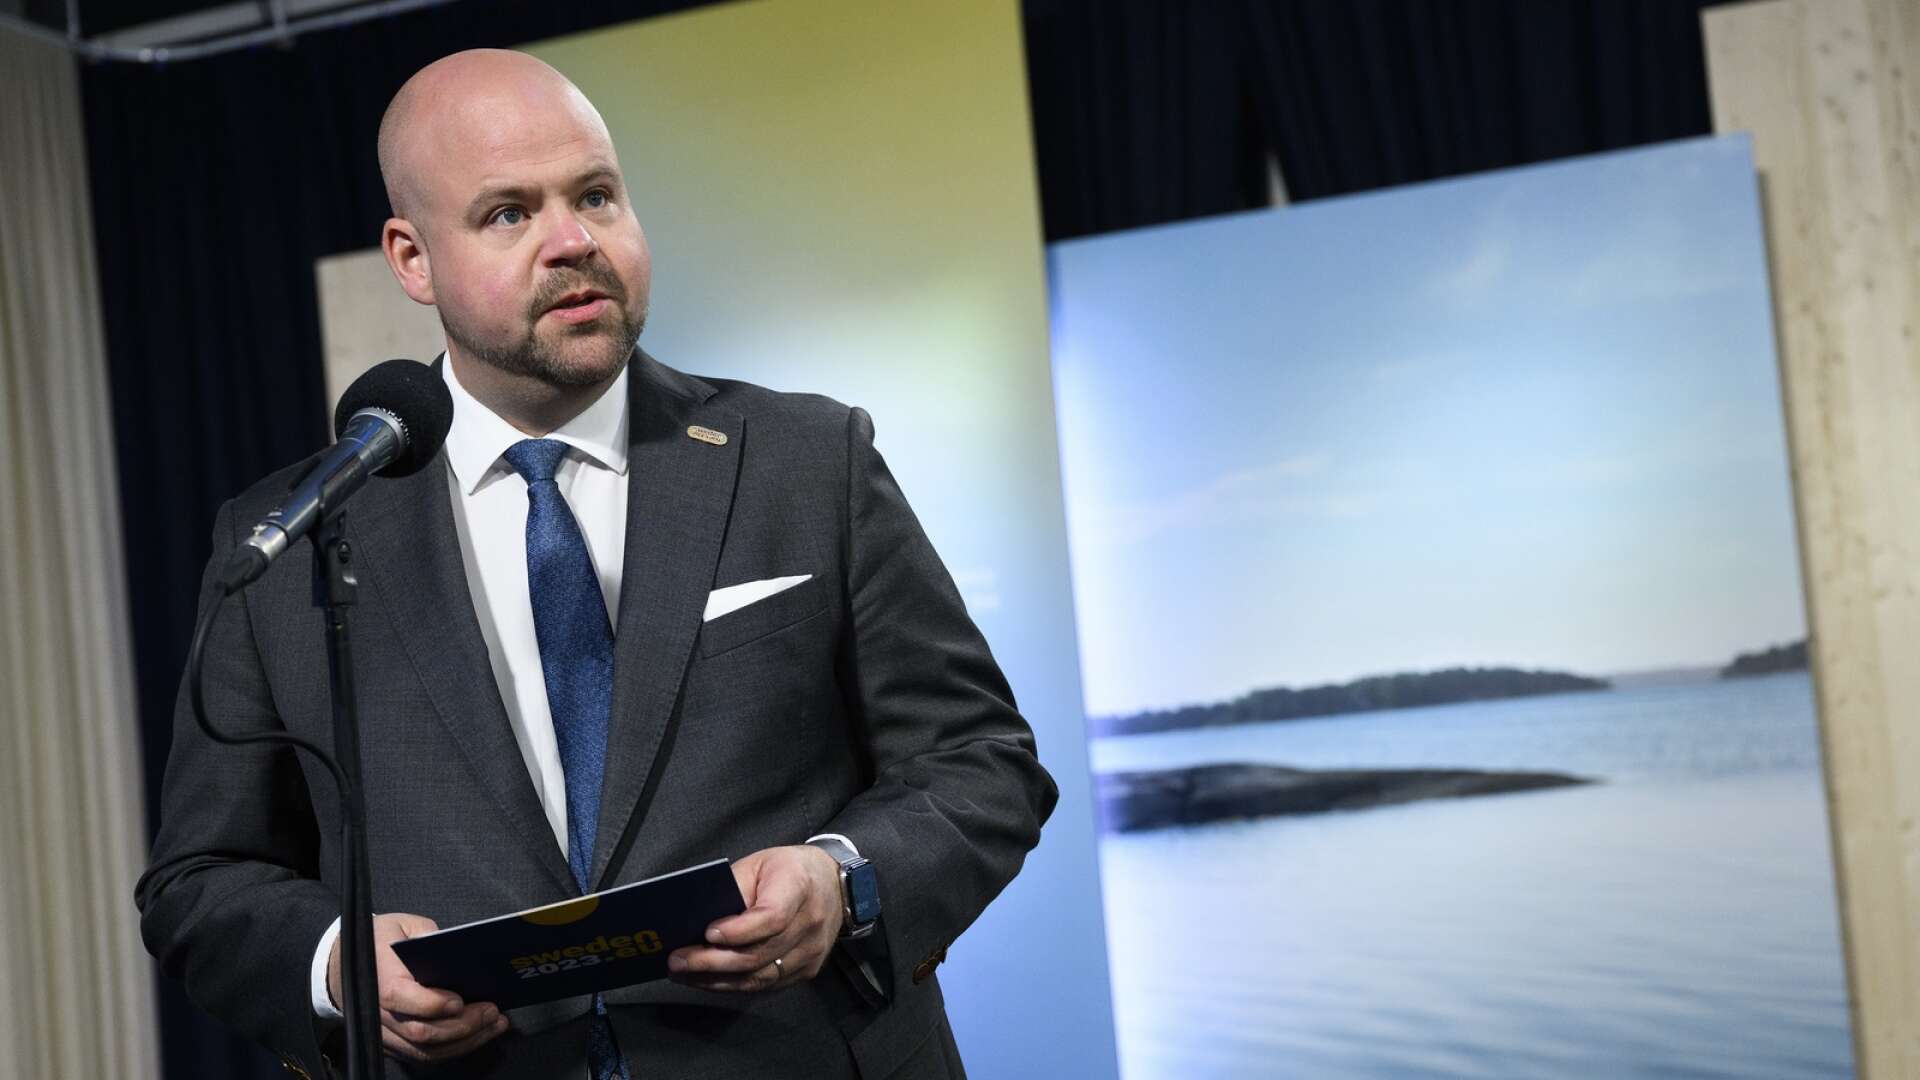 Landsbygdsminister Peter Kullgren (KD) har gått ut med att han hellre vill se en ökad köttproduktion i Sverige, skriver Edel Irén Lappin.